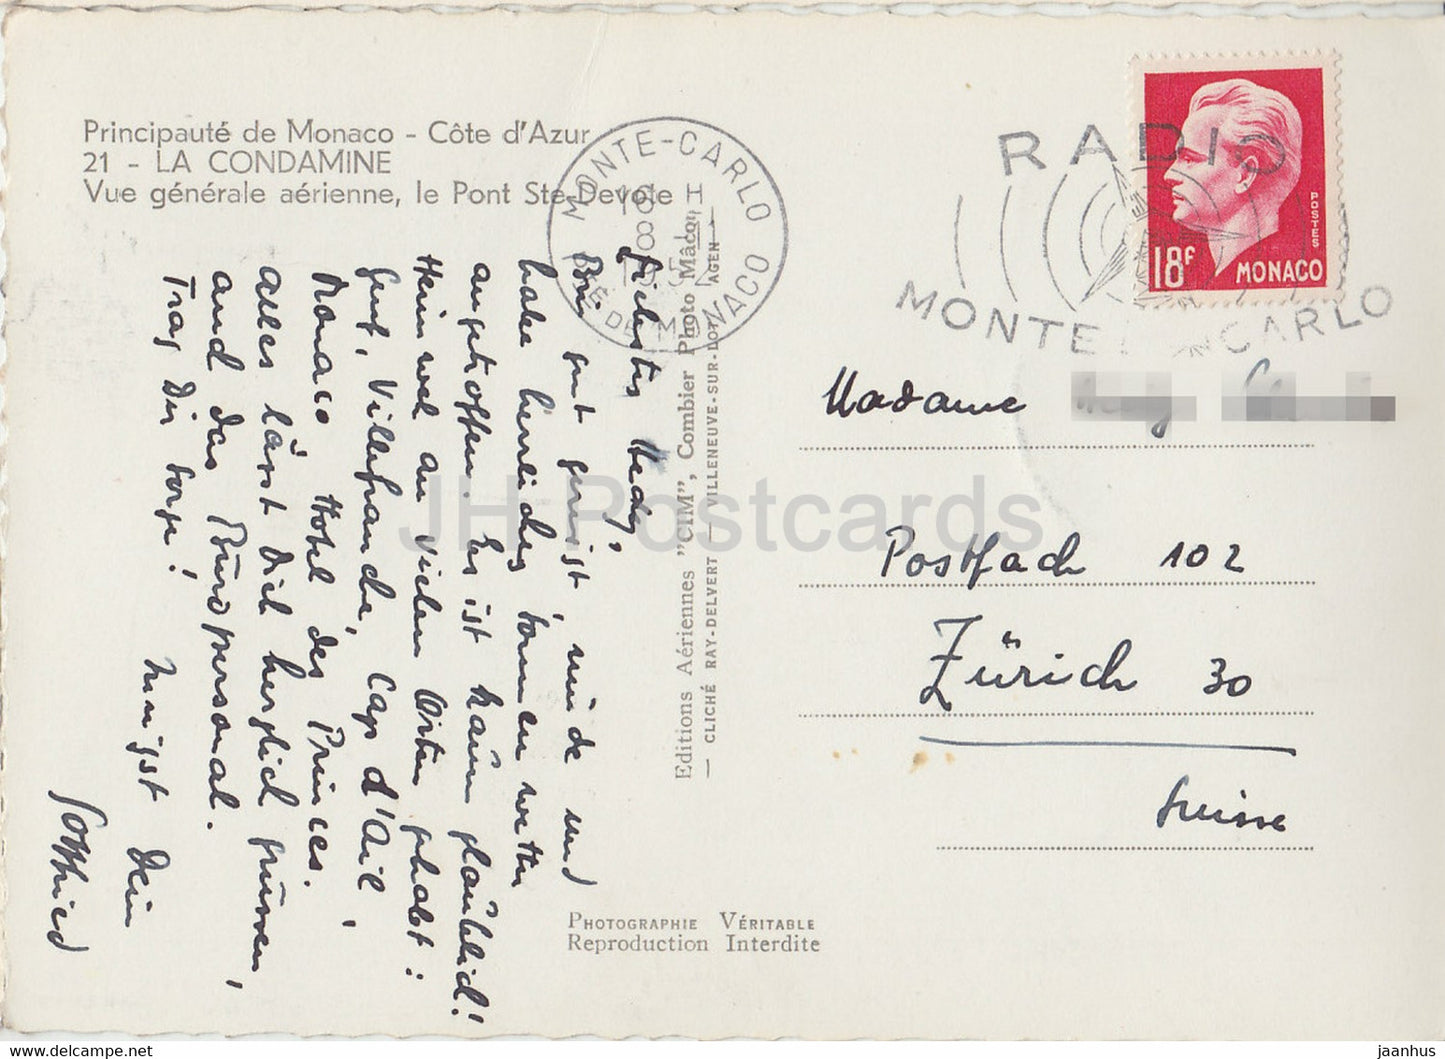 La Condamine - Vue générale aérienne le Pont Ste Dévote - carte postale ancienne - 1952 - Monaco - occasion